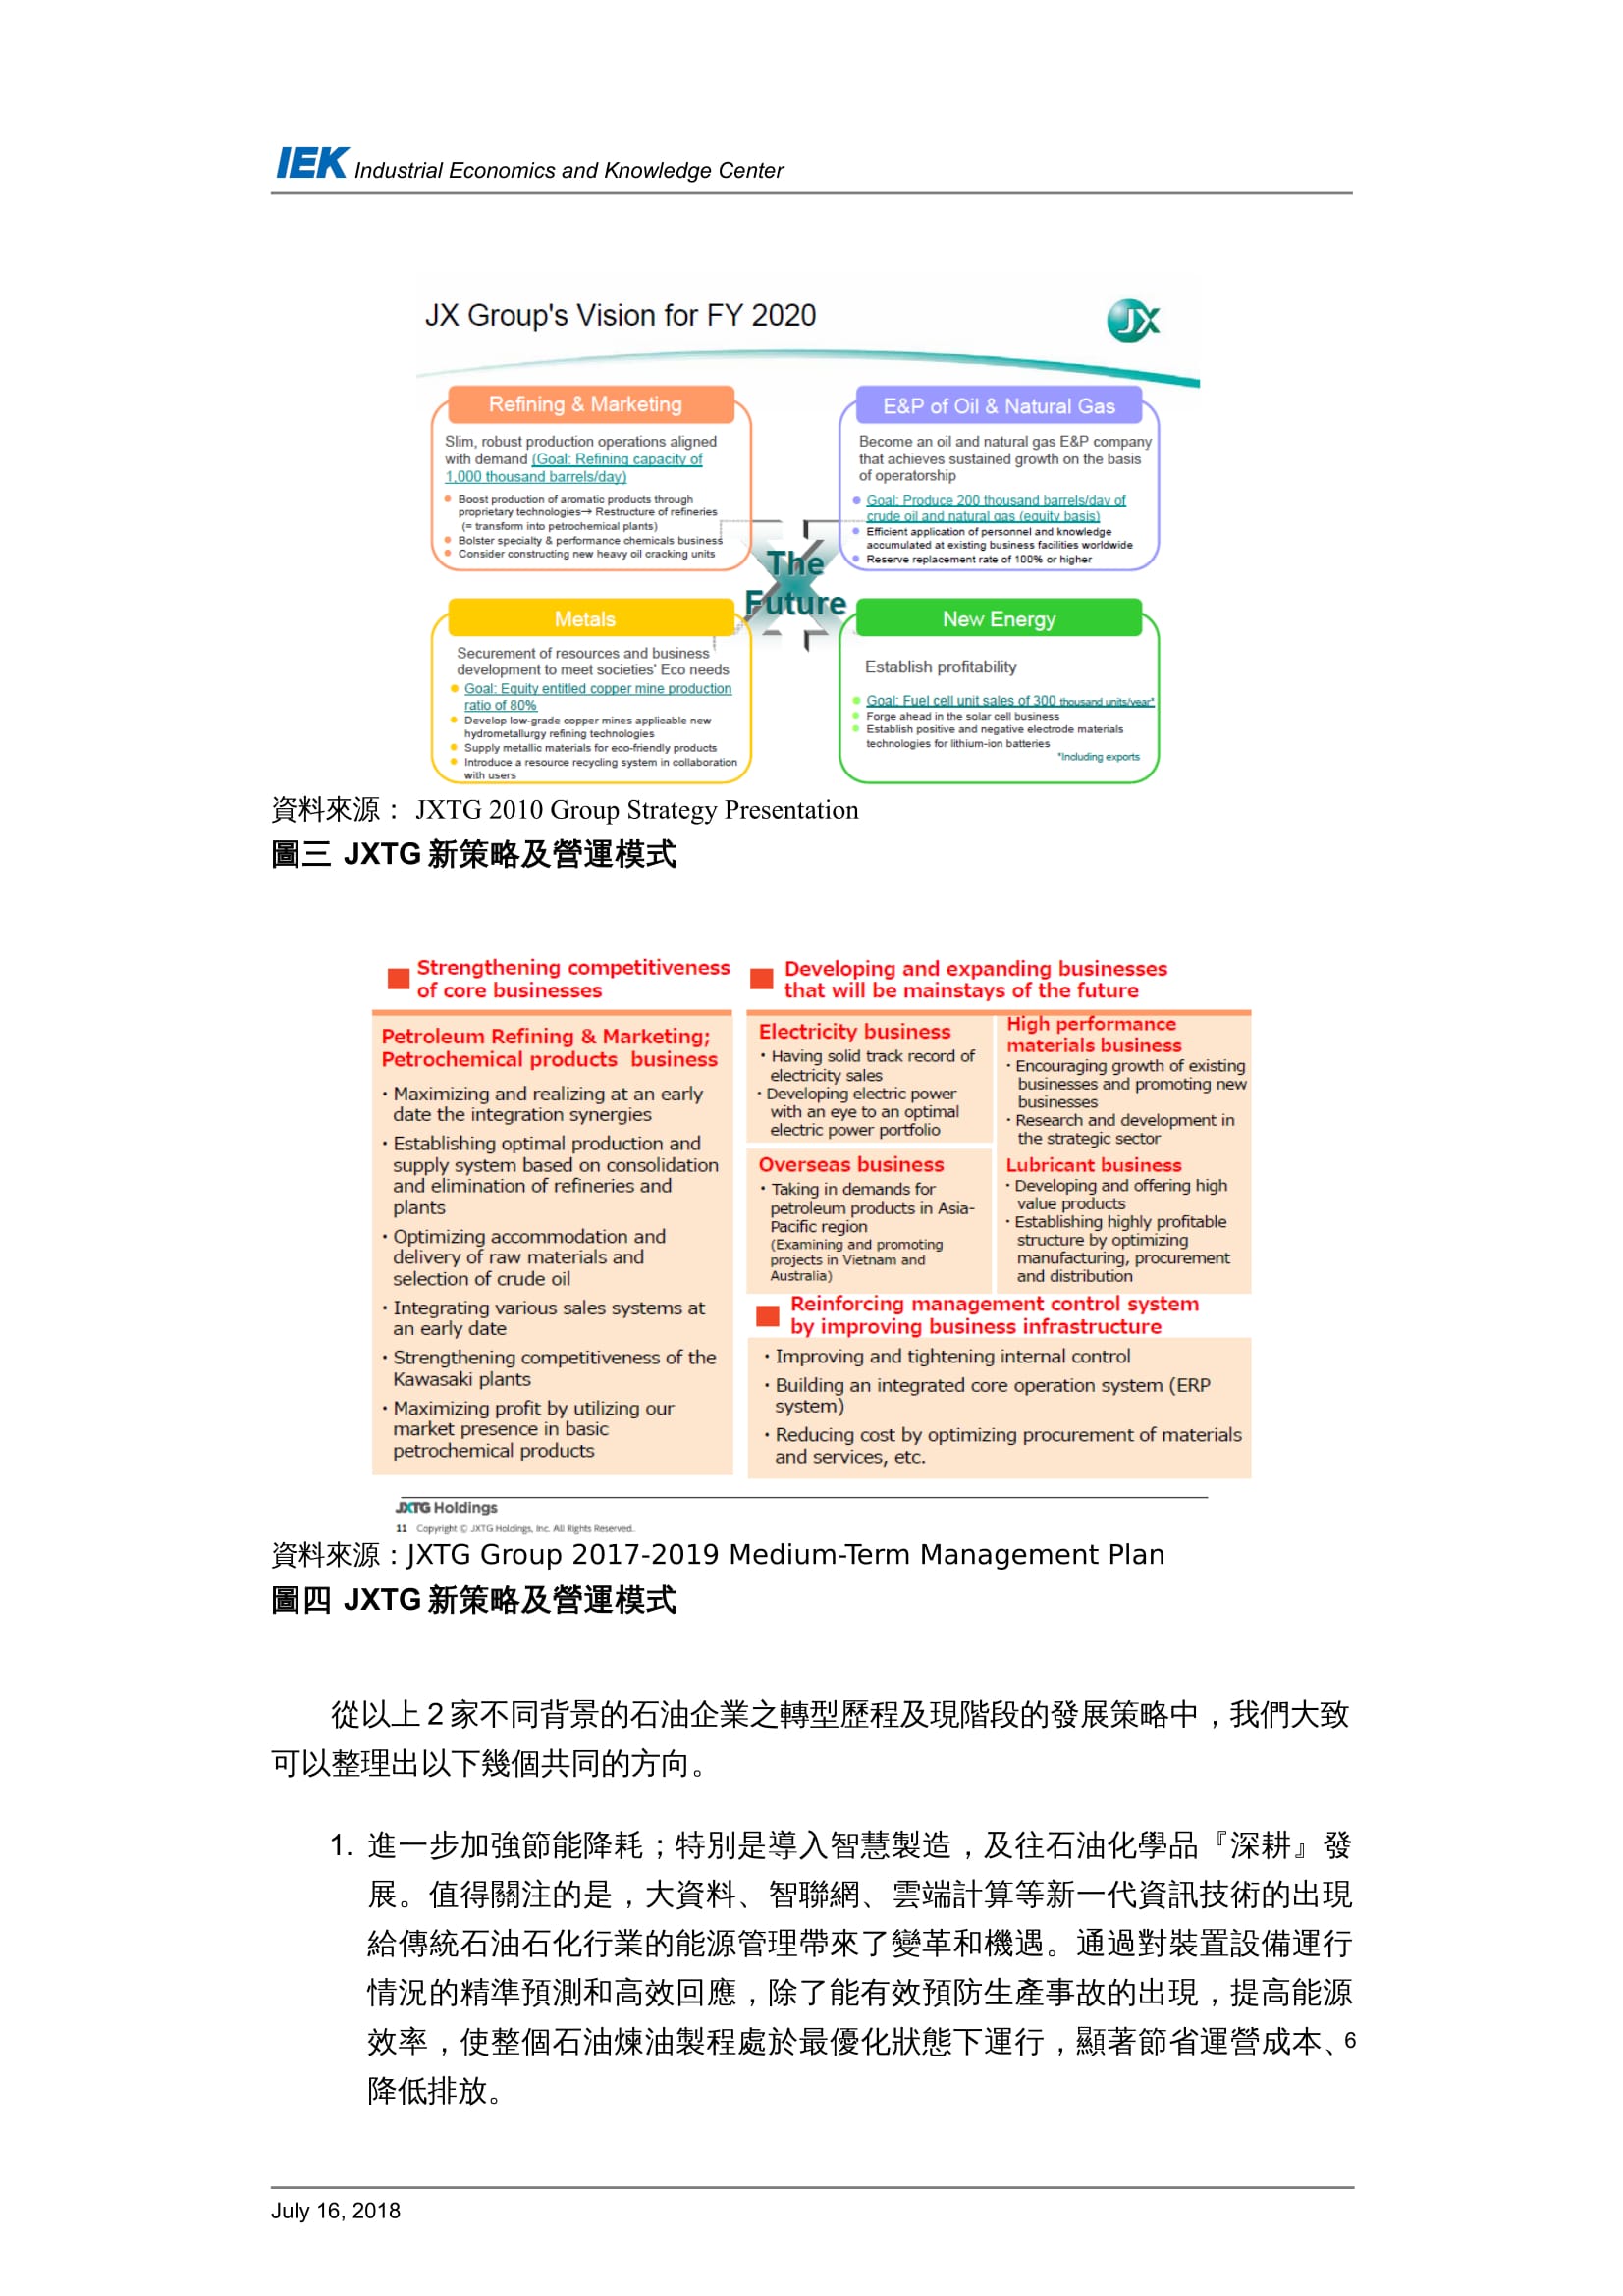 從國外石油產業的轉型看台灣中油的轉型策略_共11頁_第8頁內文(詳如下方附件)